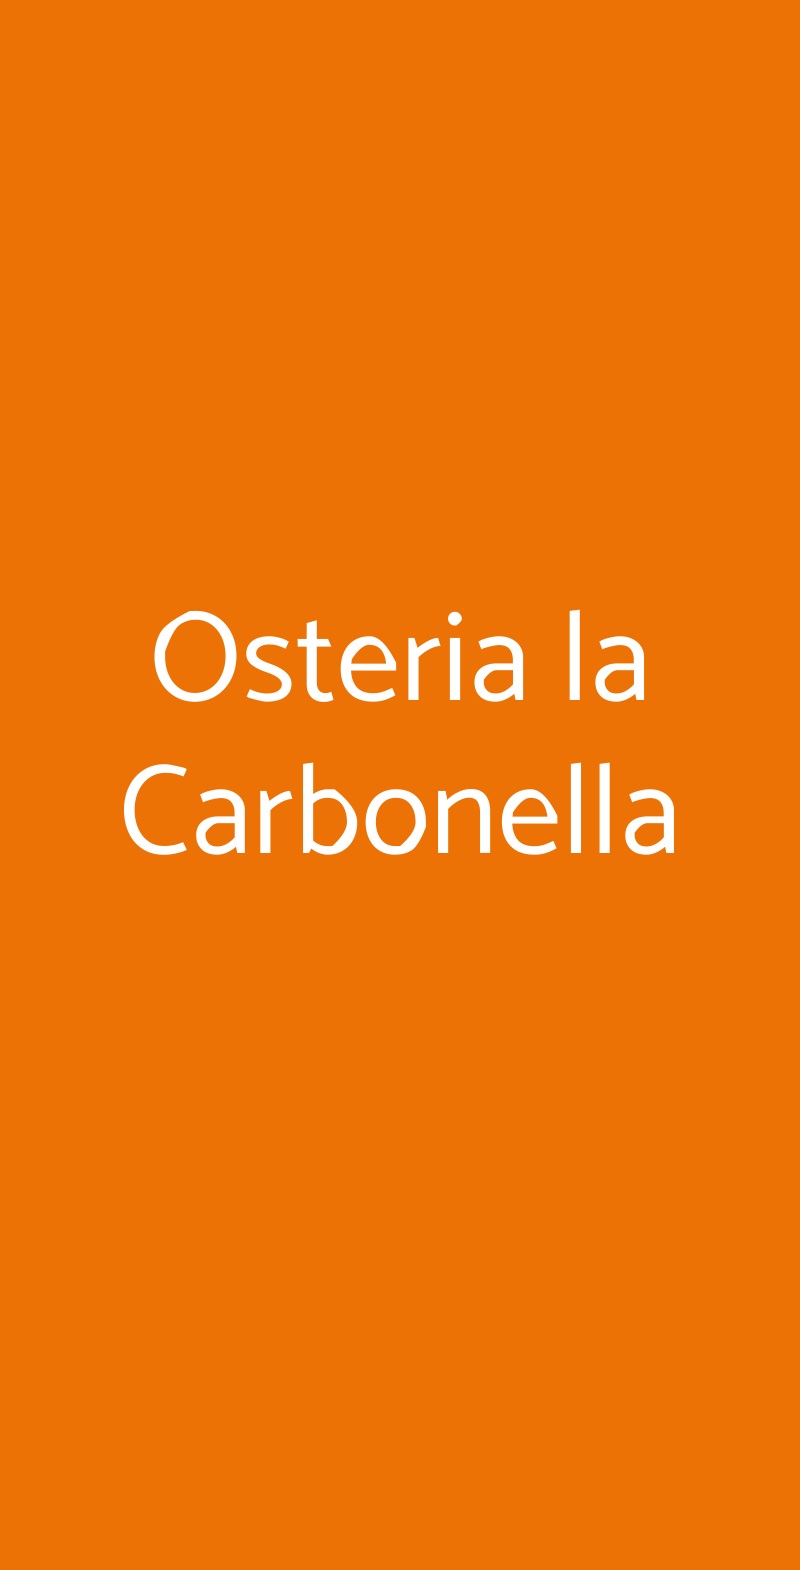 Osteria la Carbonella Milano menù 1 pagina